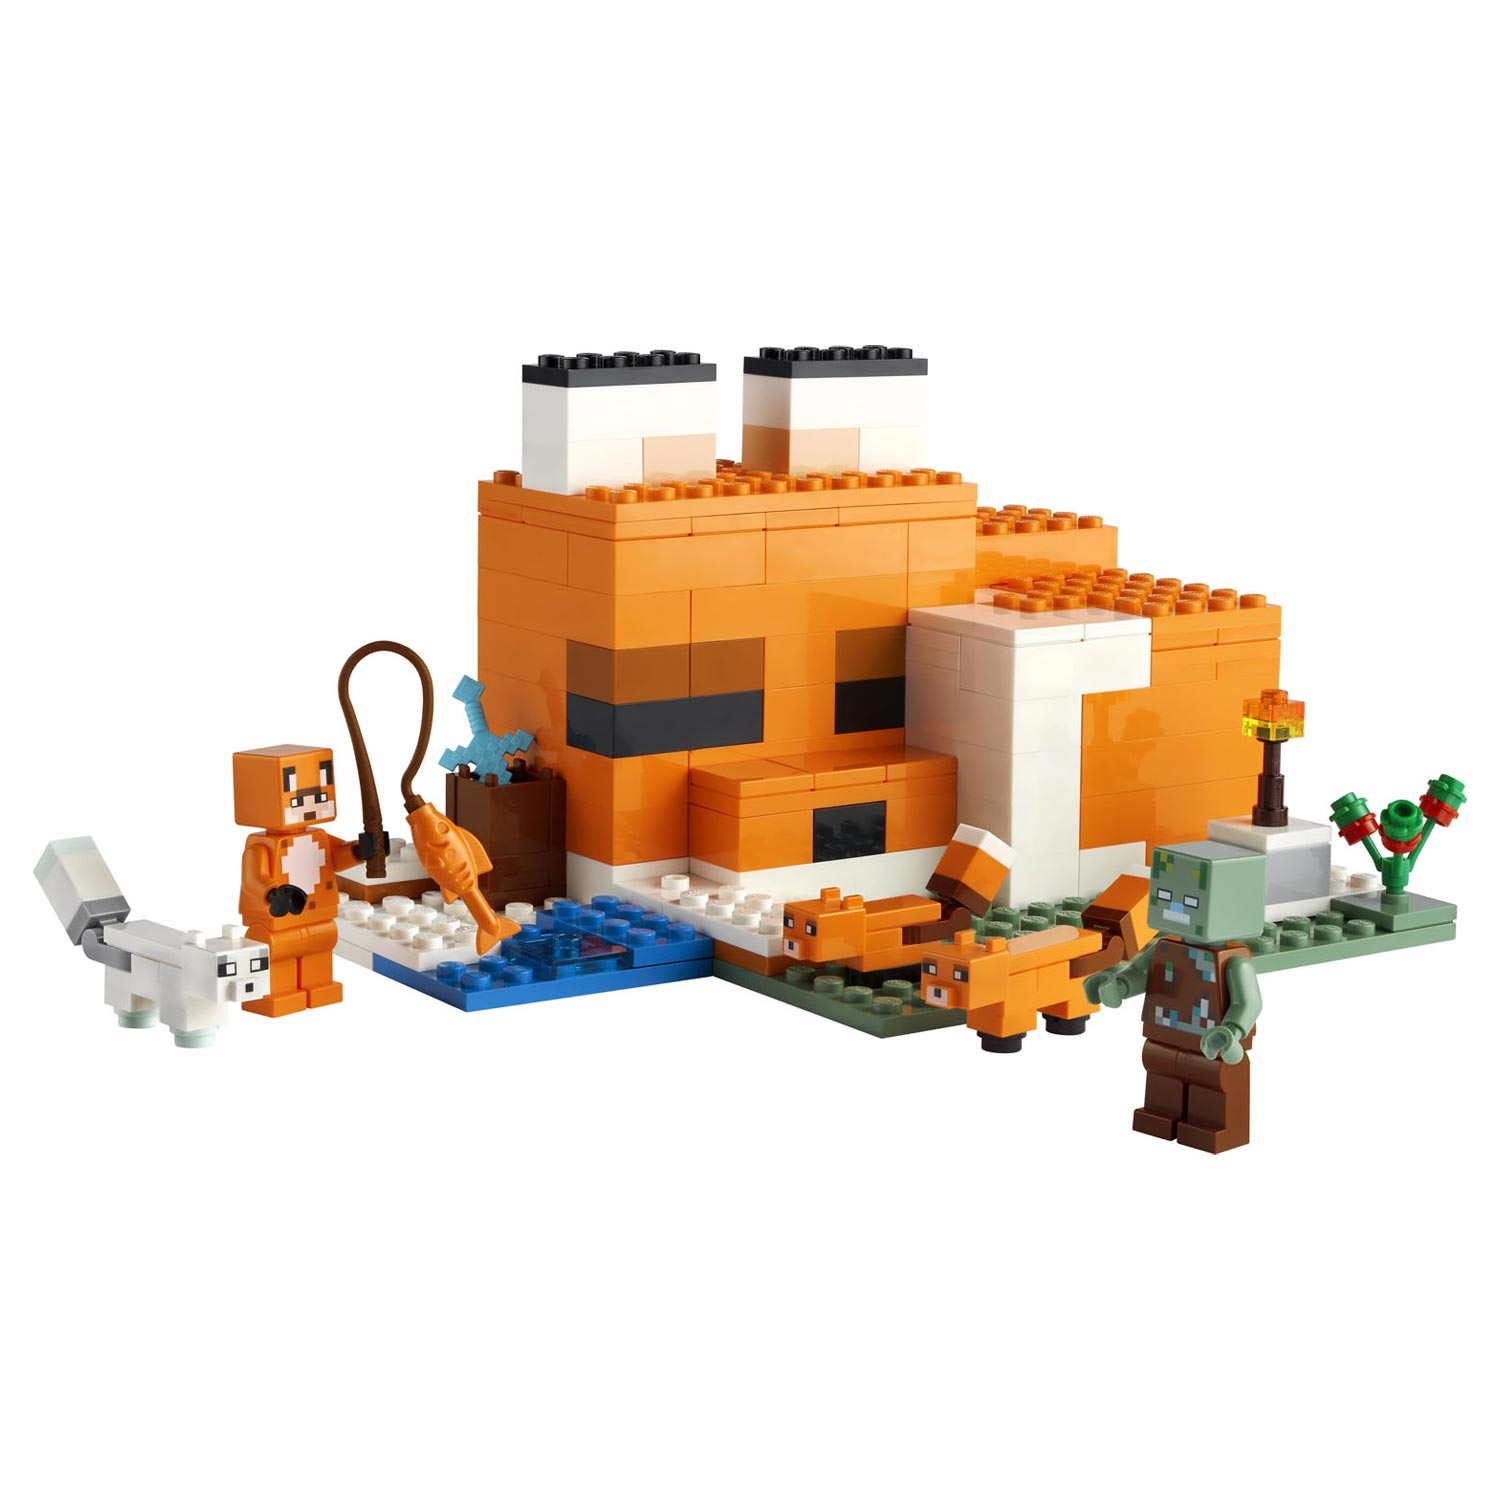 21178 LEGO Minecraft Die Fuchshütte